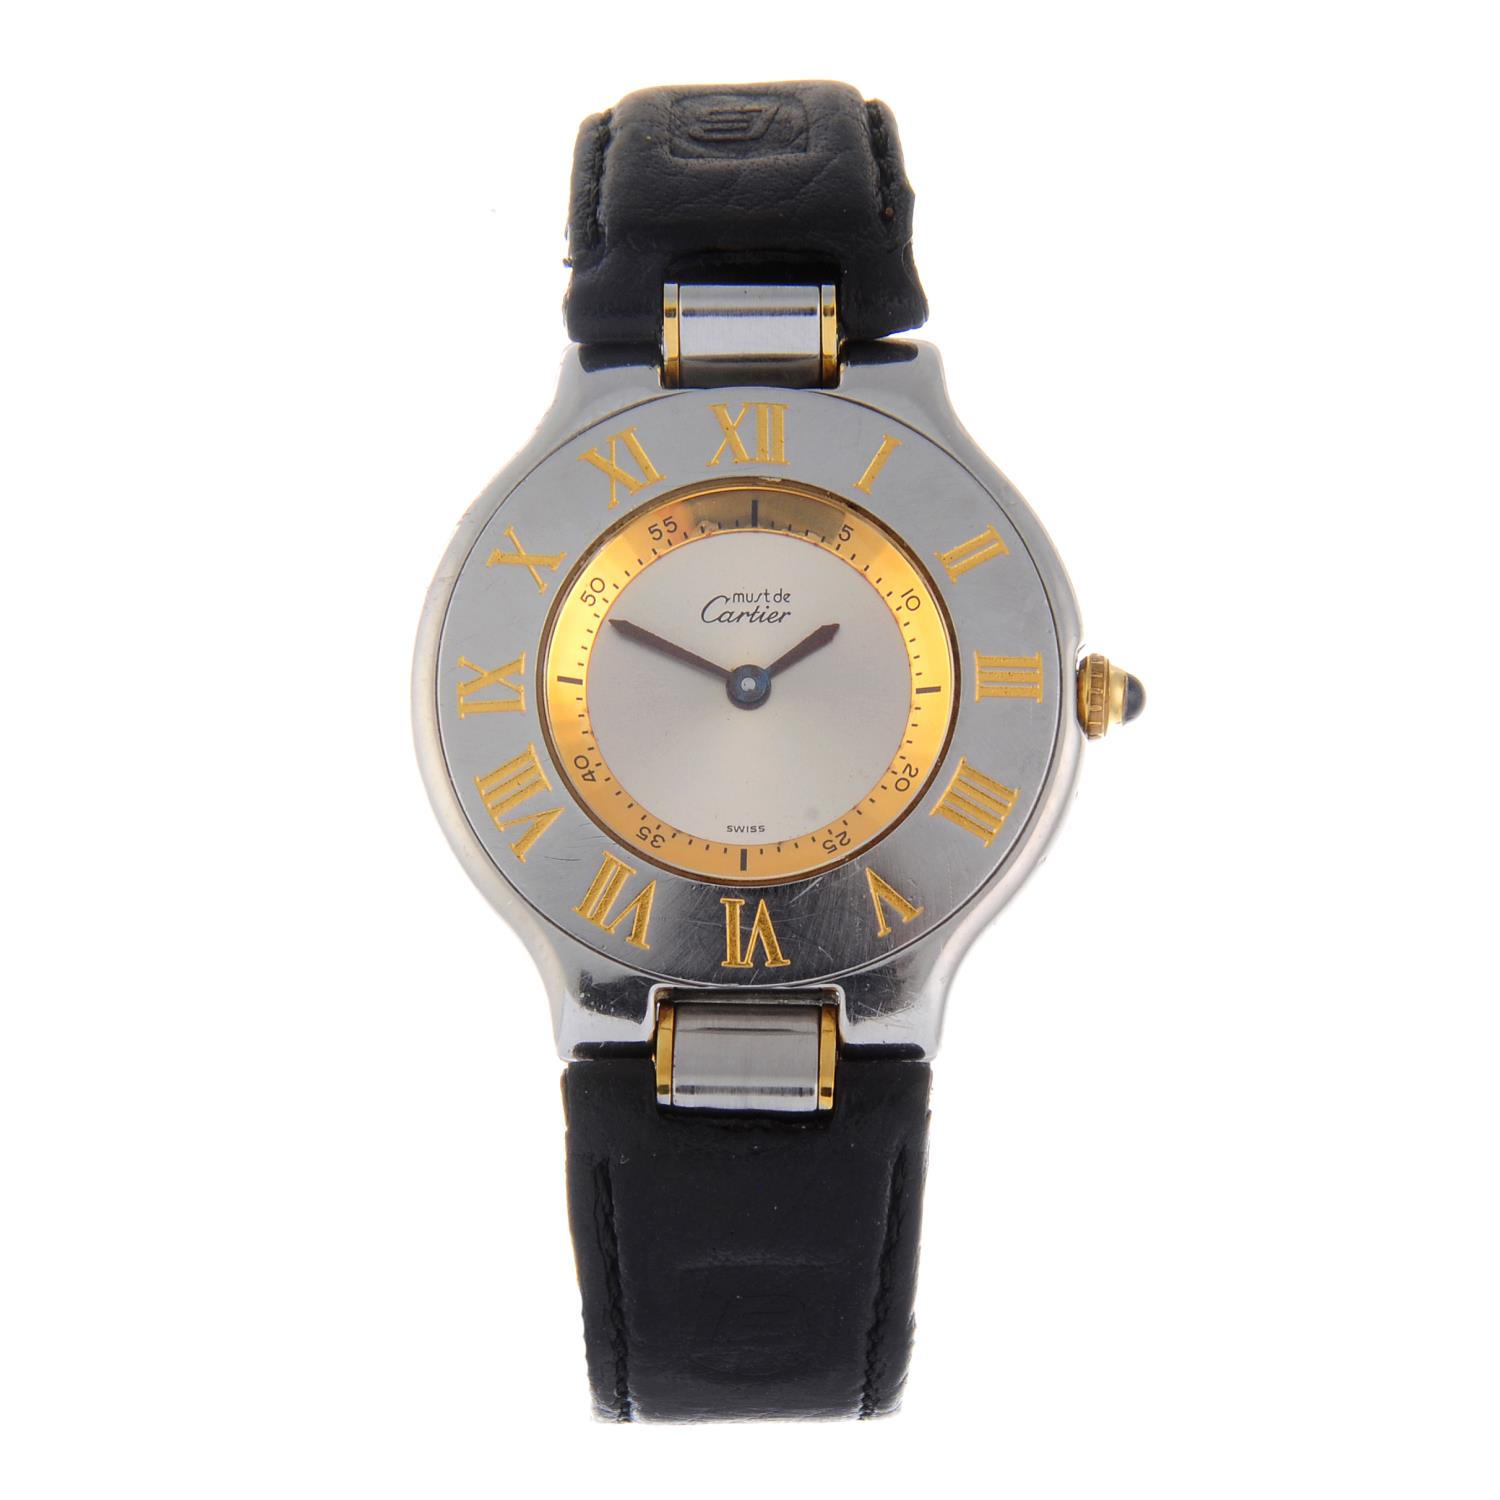 CARTIER - a Must De Cartier 21 wrist watch.